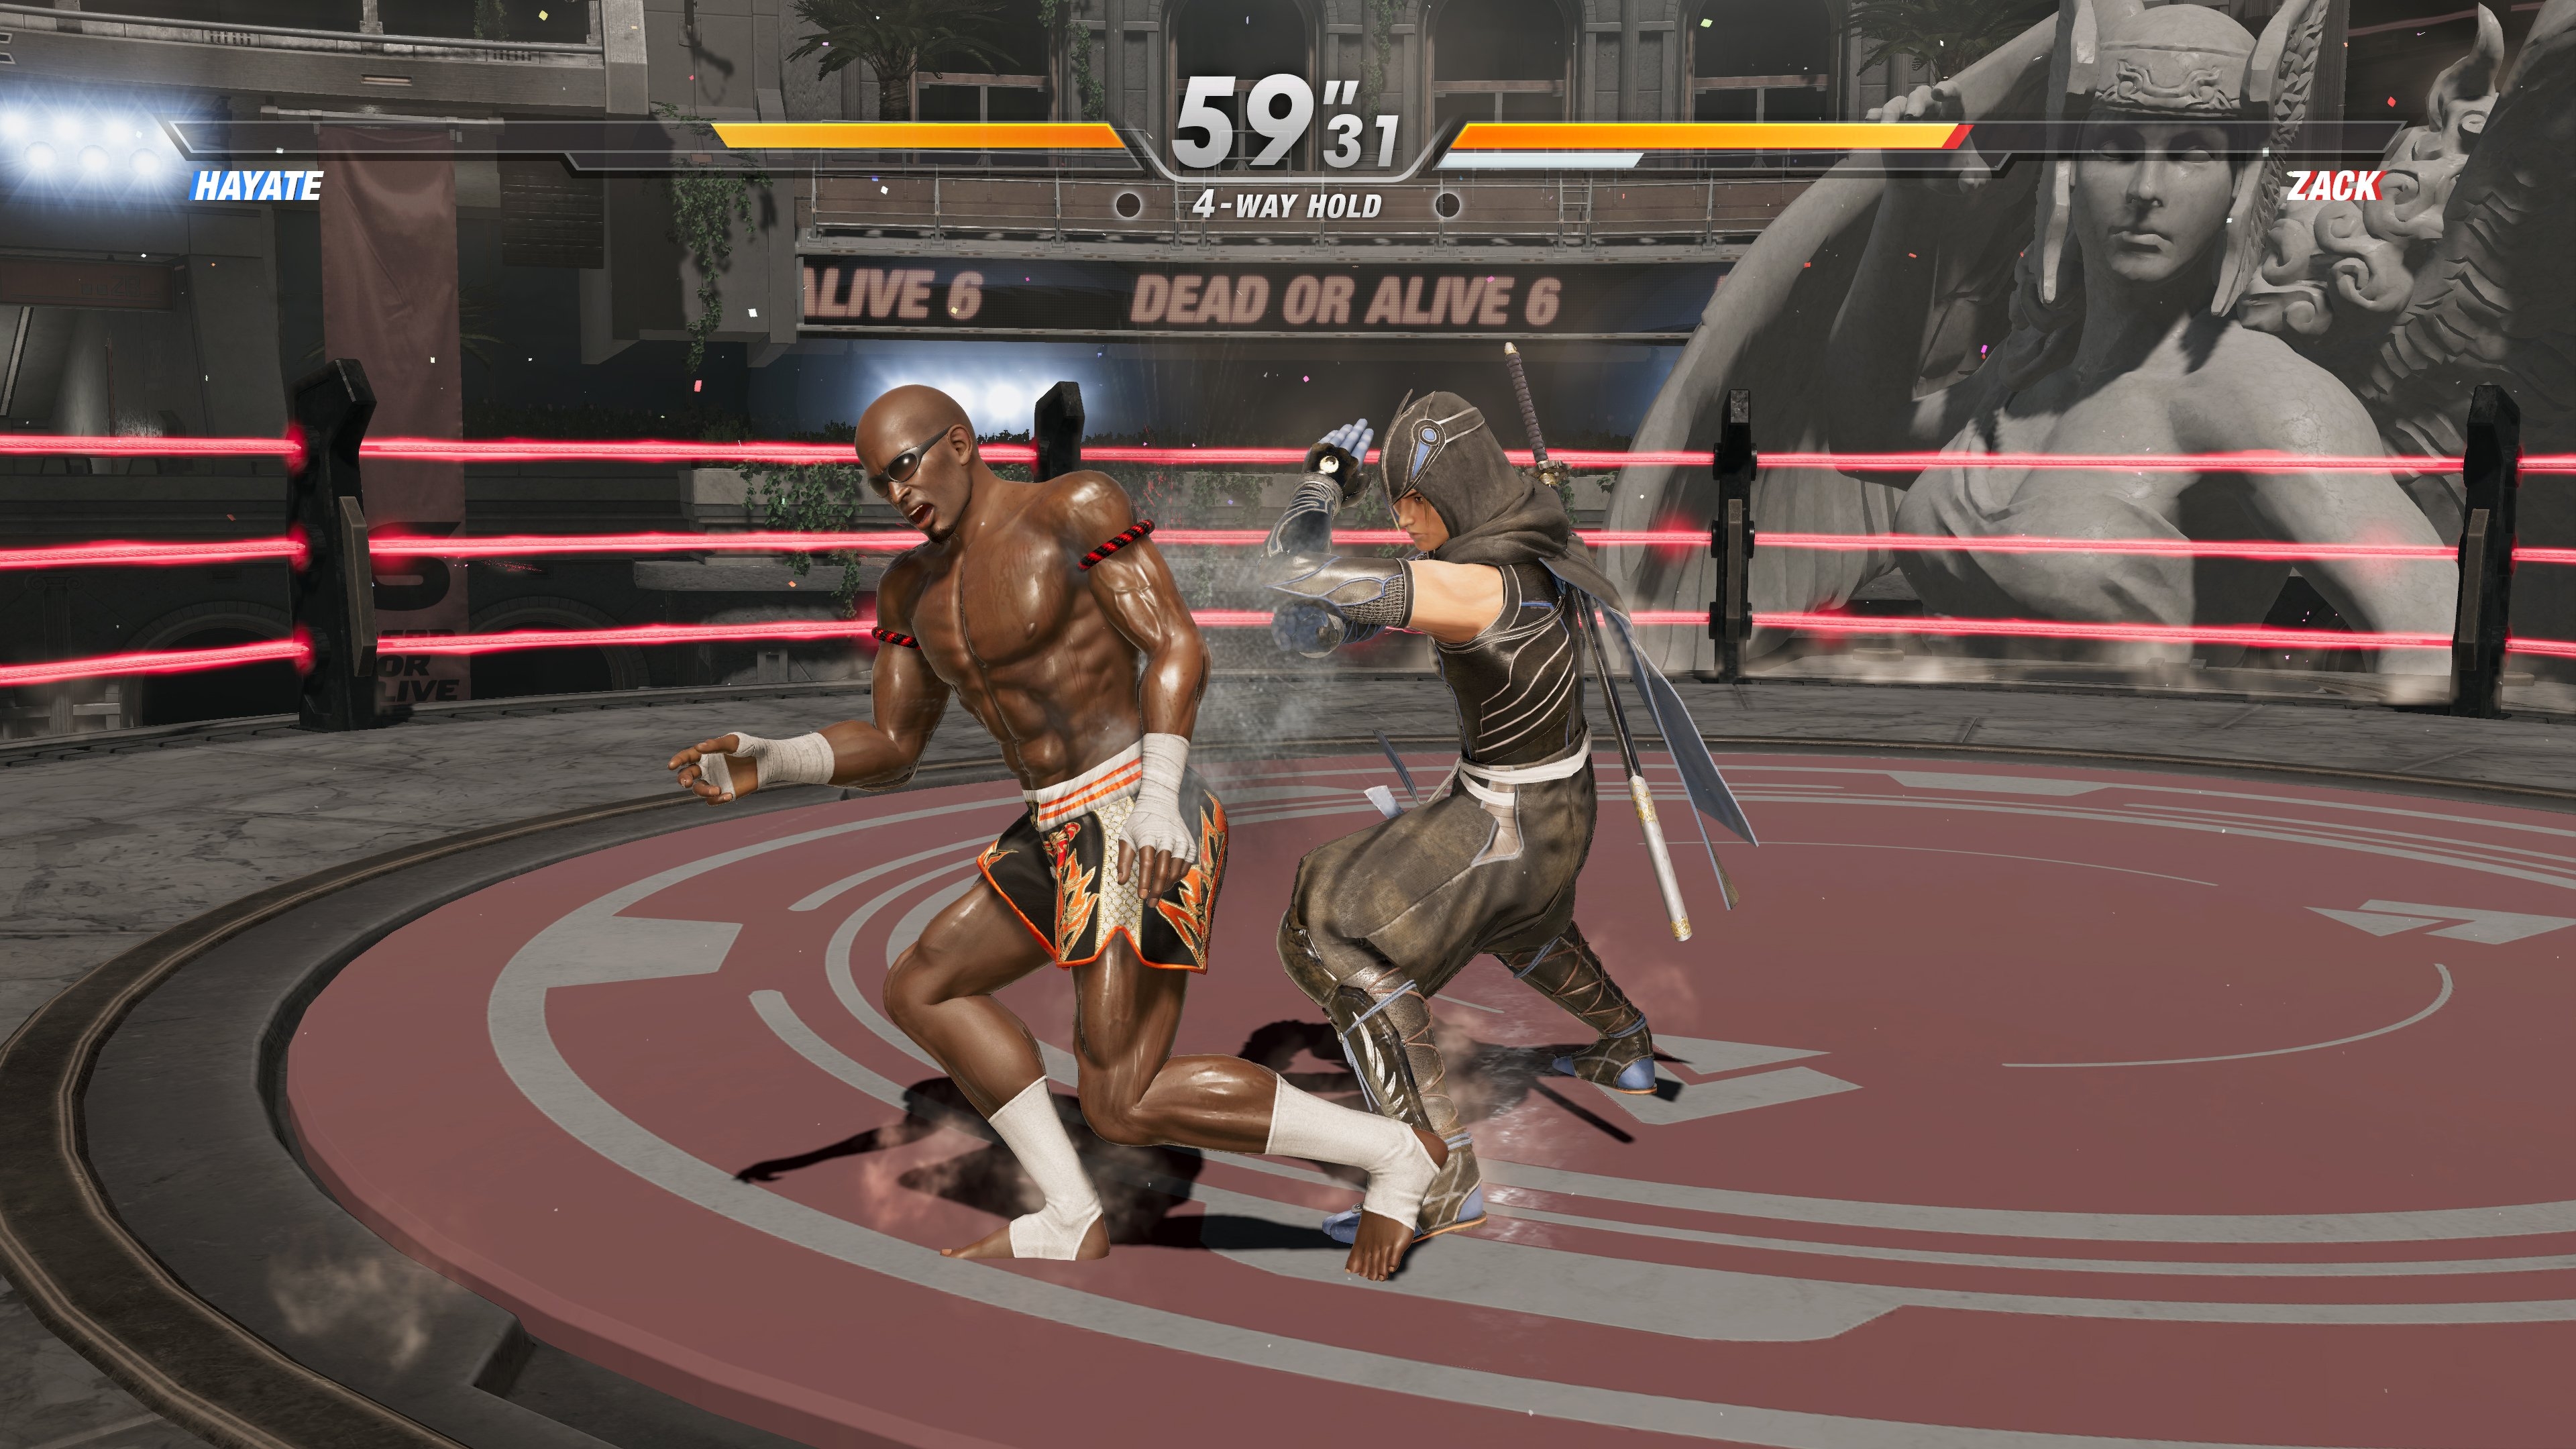 Скриншот из игры Dead or Alive 6 под номером 5